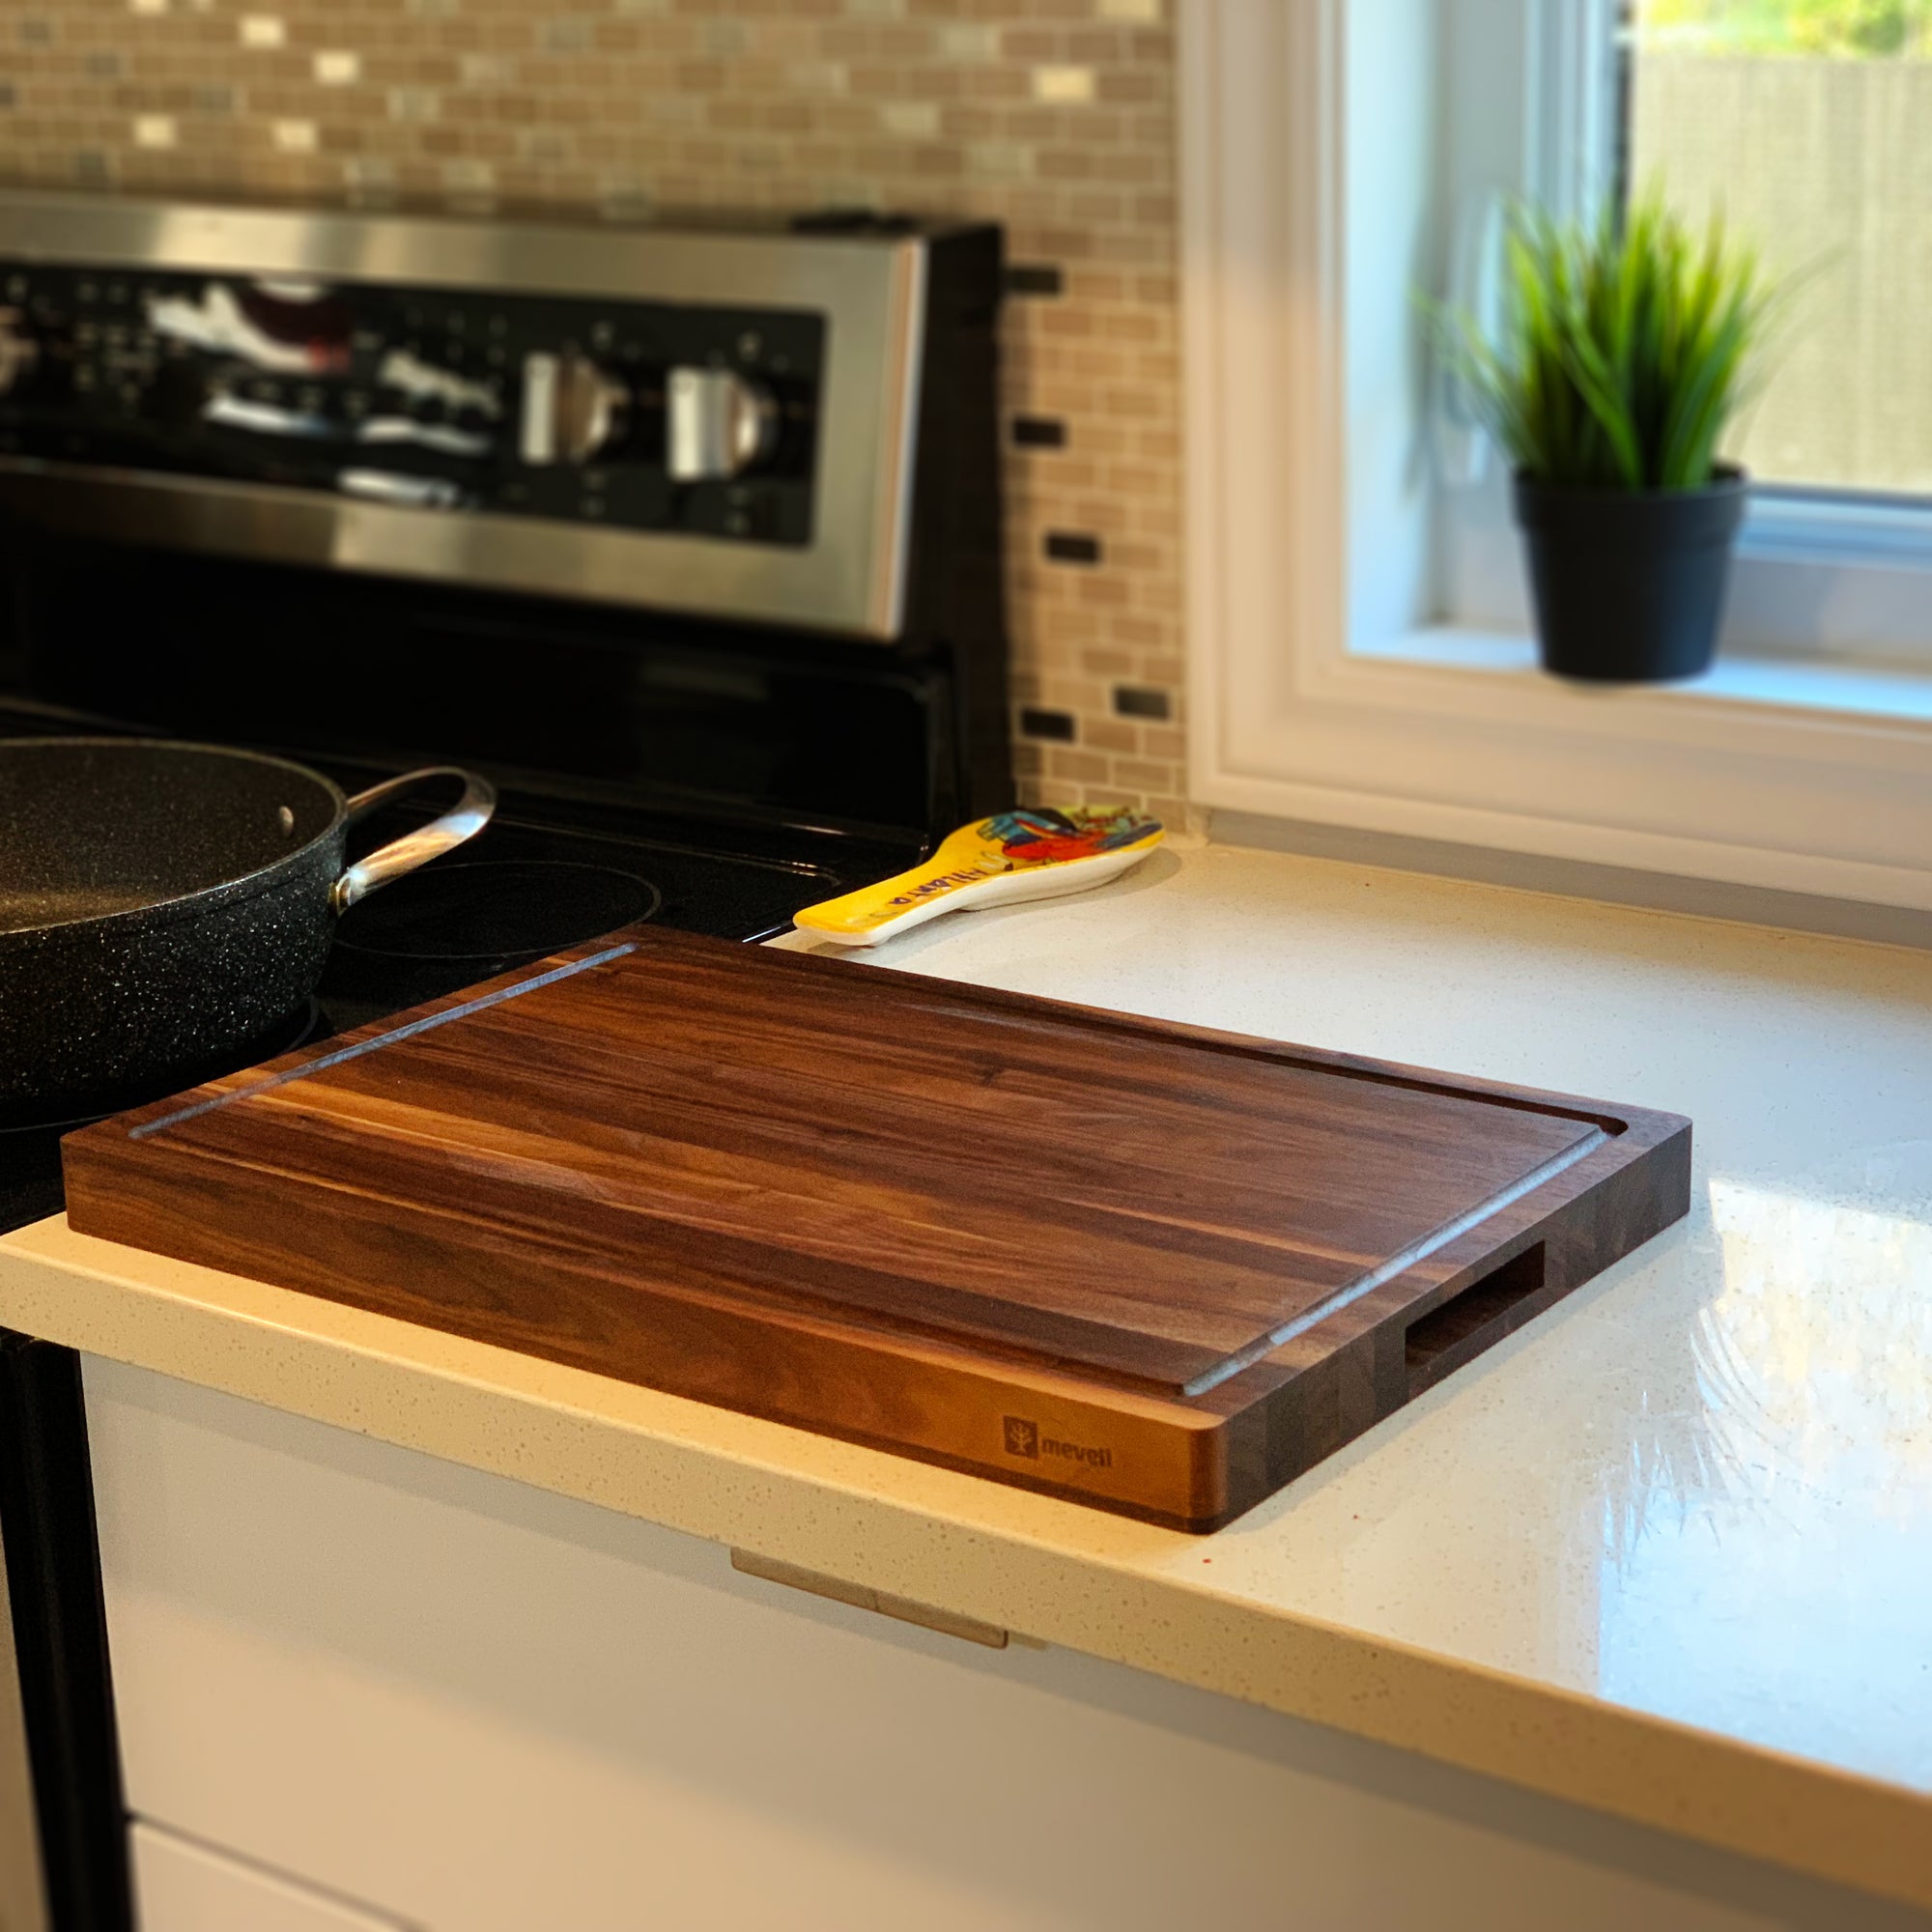 18 x 12 Large Dark Walnut Cutting Board – Refine Kitchenware